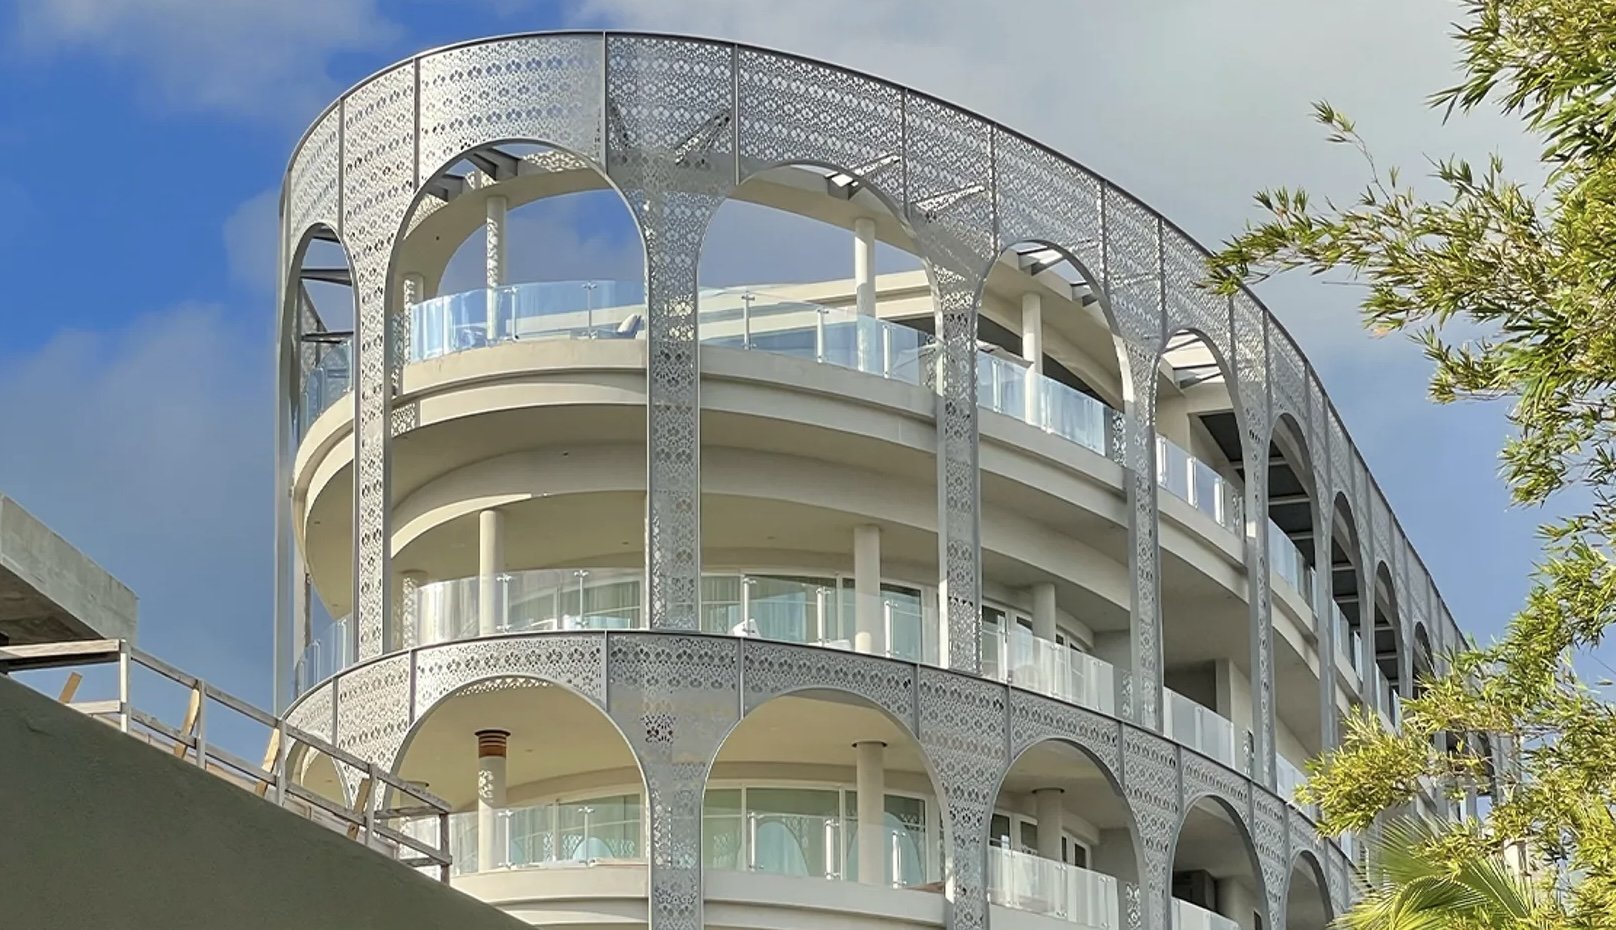 山姆·班克曼-弗里德价值3000万美元的顶层公寓所在建筑，因其定制的兰花镂空外墙而得名，其灵感来自新奥尔良的法国区。图片来源：福克斯新闻